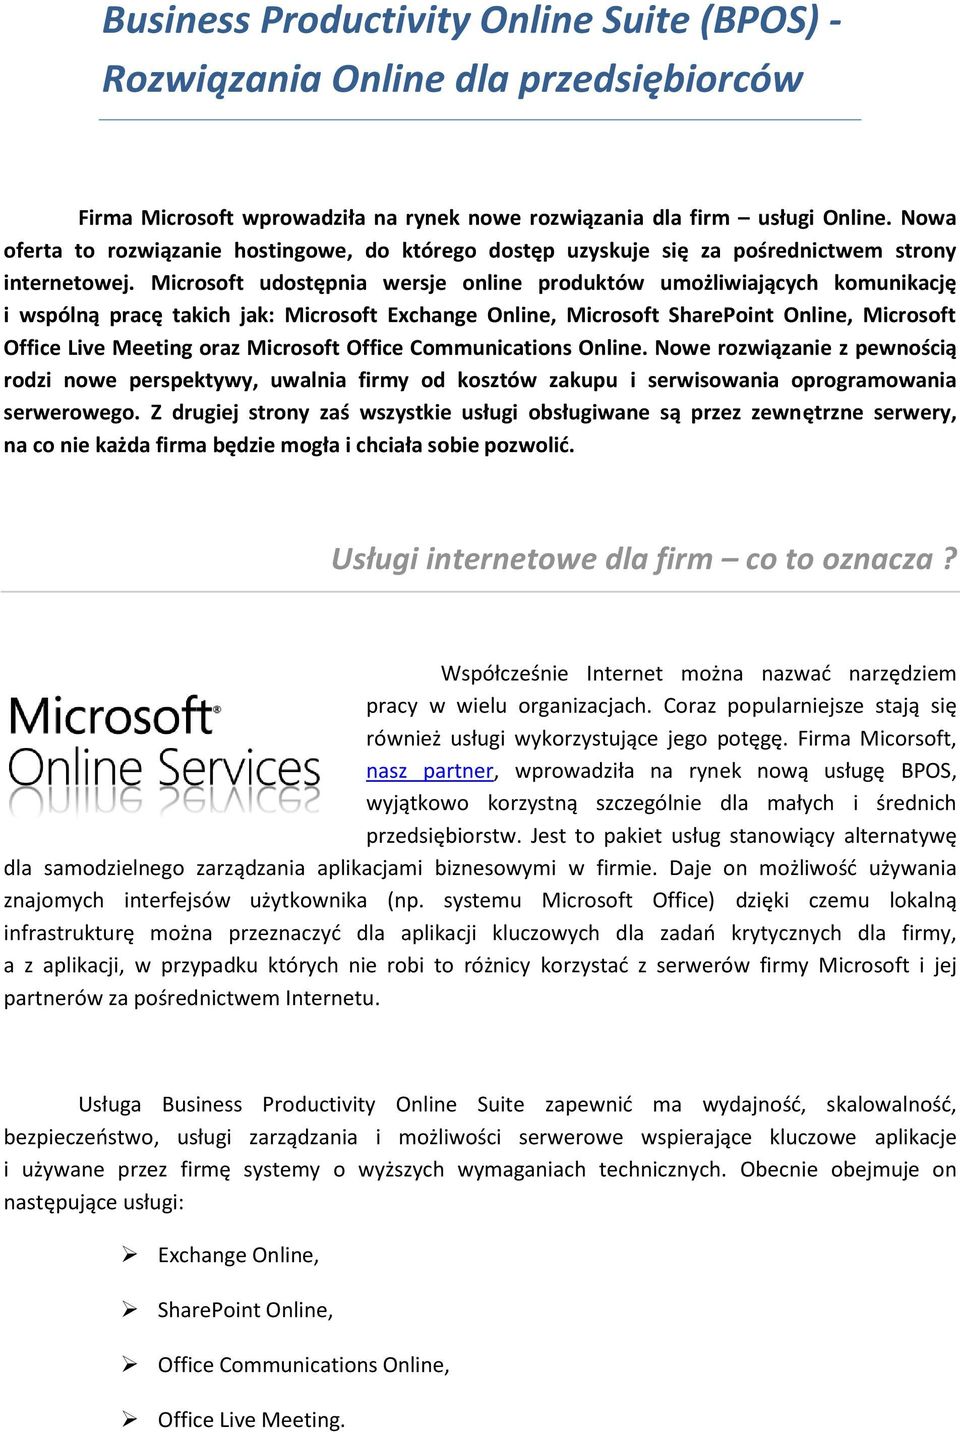 Microsoft udostępnia wersje online produktów umożliwiających komunikację i wspólną pracę takich jak: Microsoft Exchange Online, Microsoft SharePoint Online, Microsoft Office Live Meeting oraz